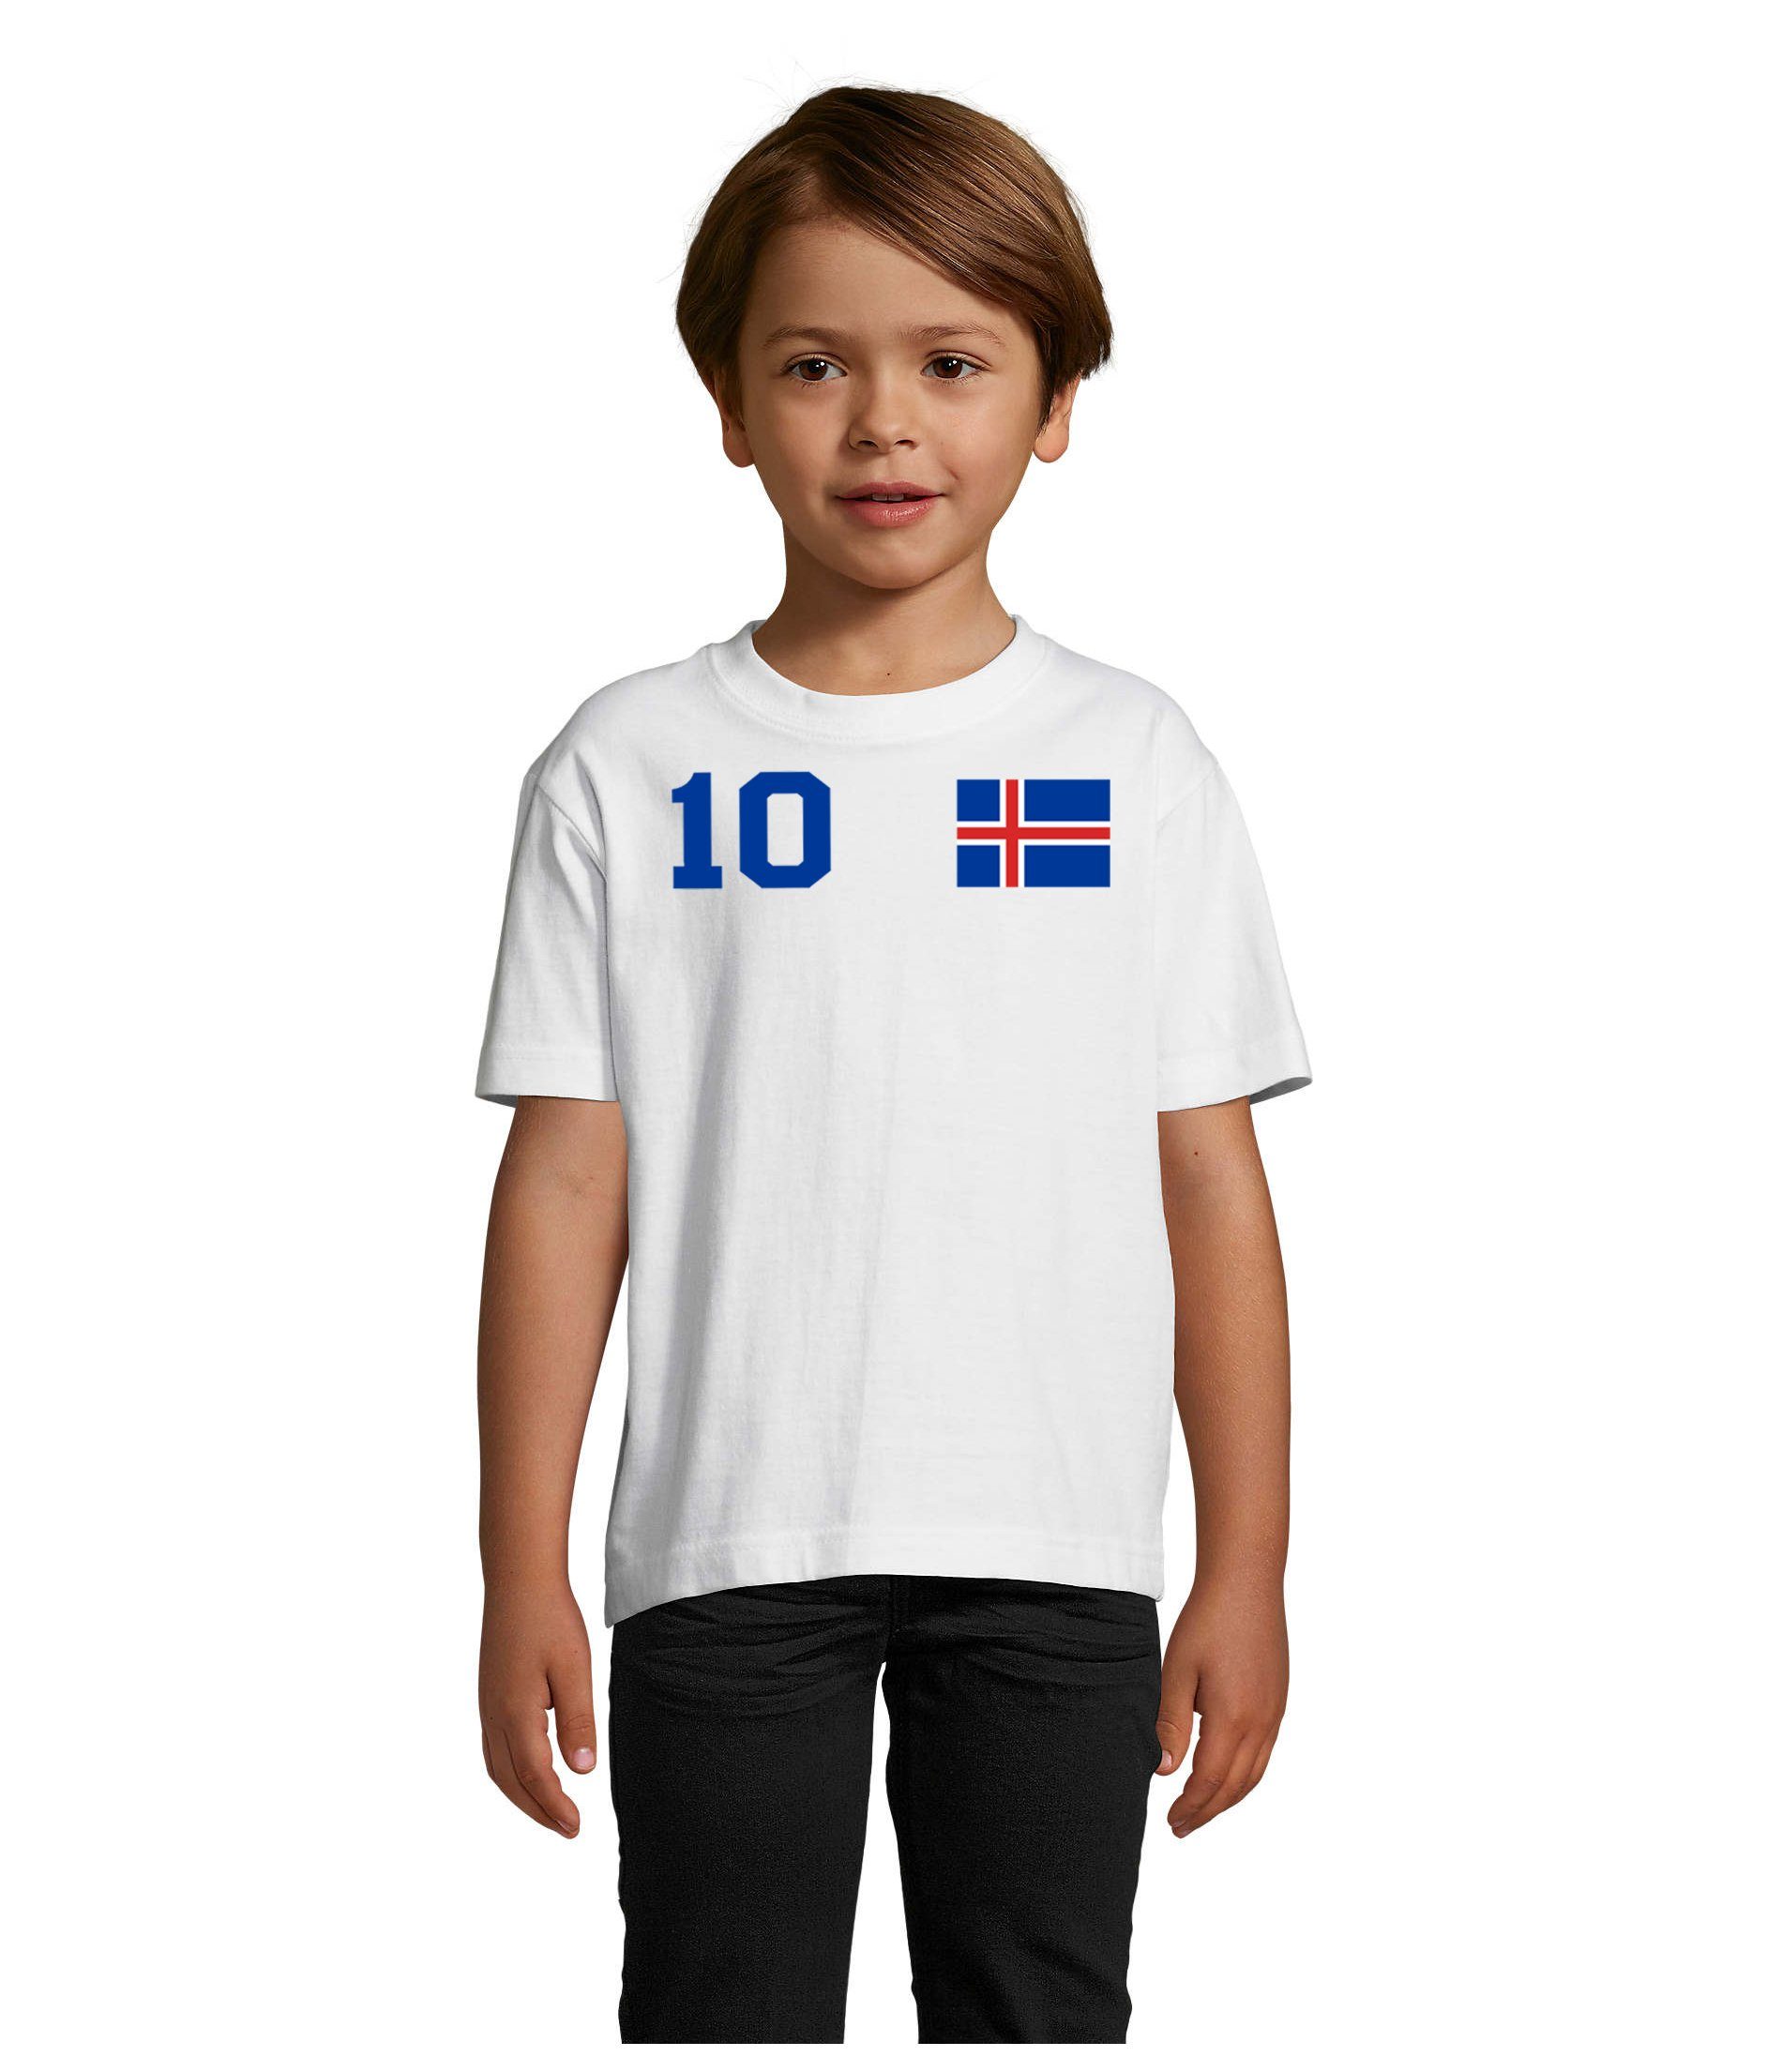 Blondie & Brownie T-Shirt Kinder Island Iceland Sport Trikot Fußball Handball Meister WM EM Blau/Weiss